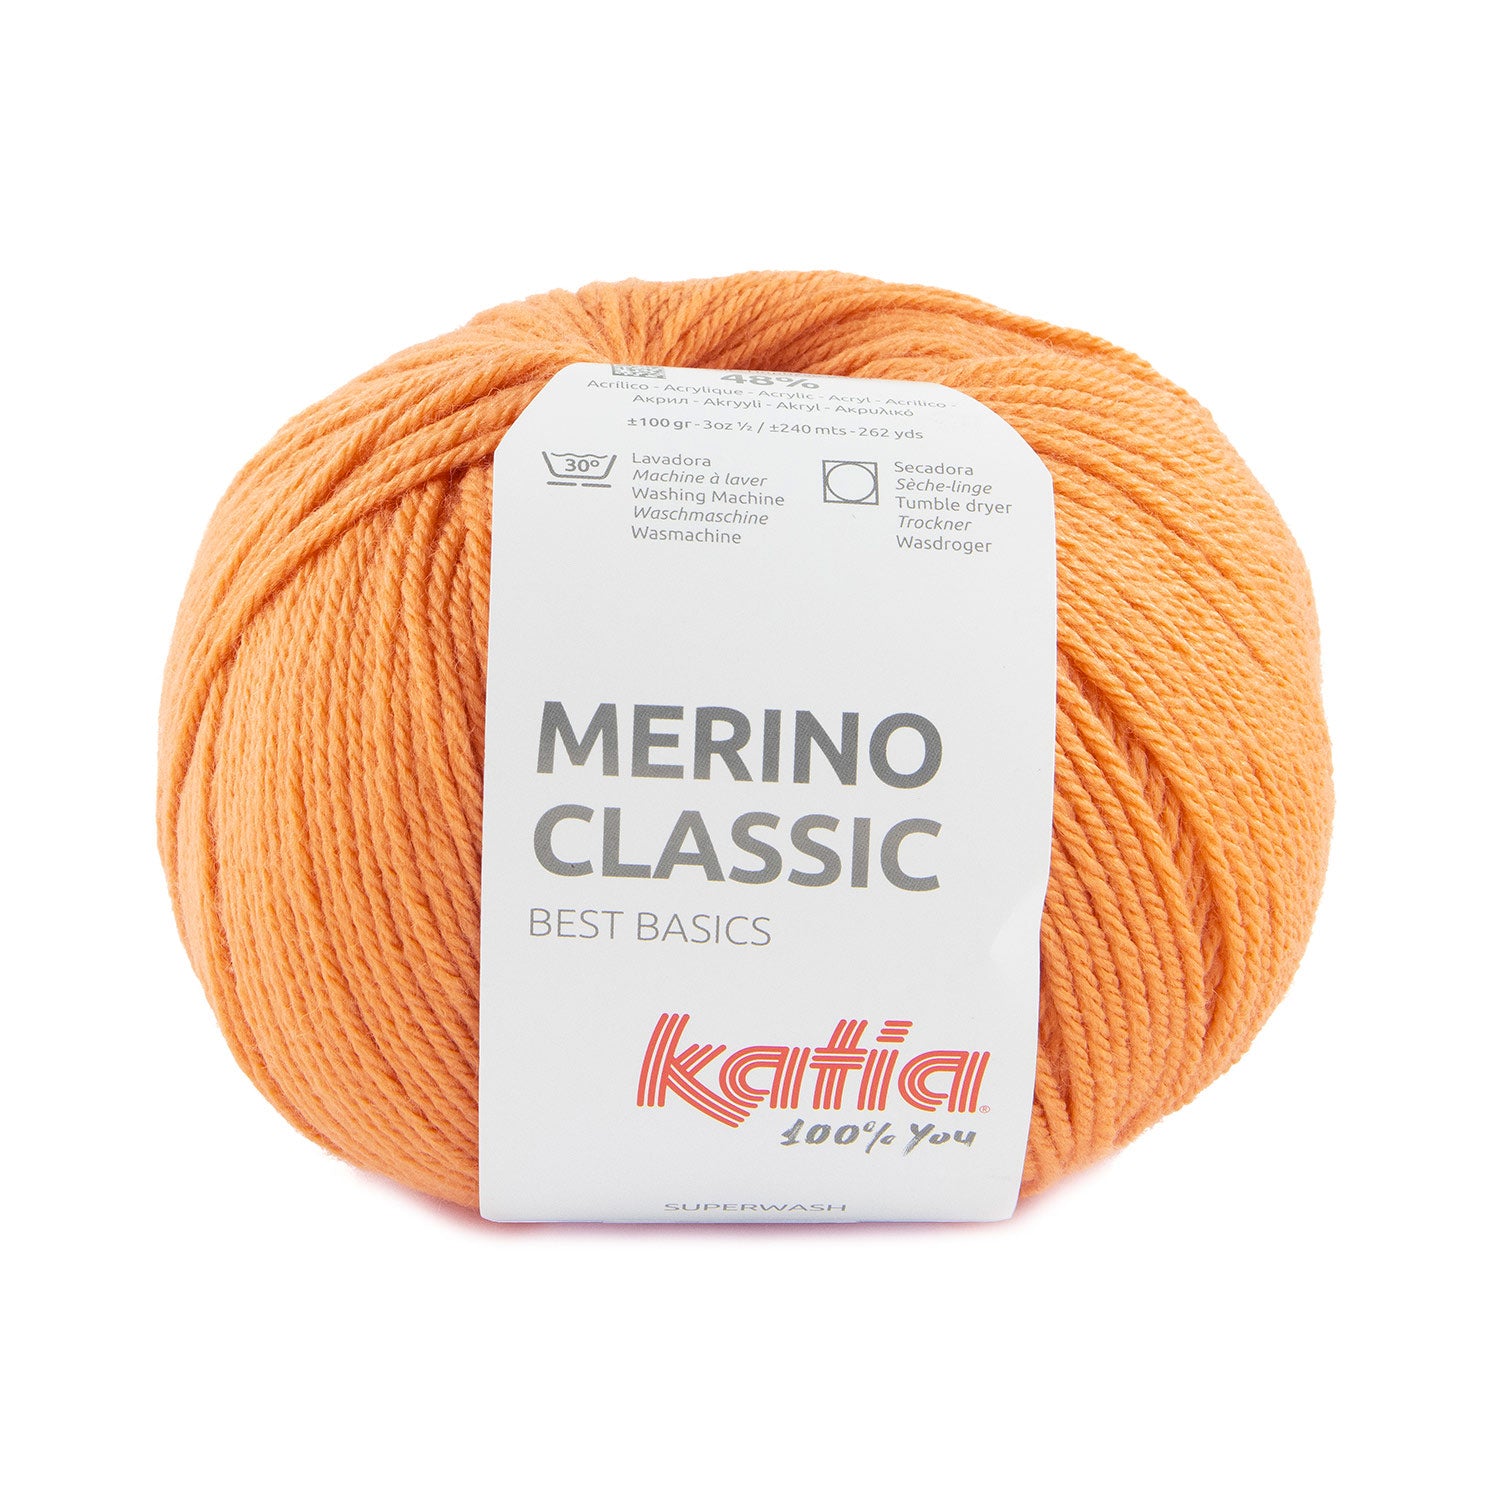 Merino classic color 92